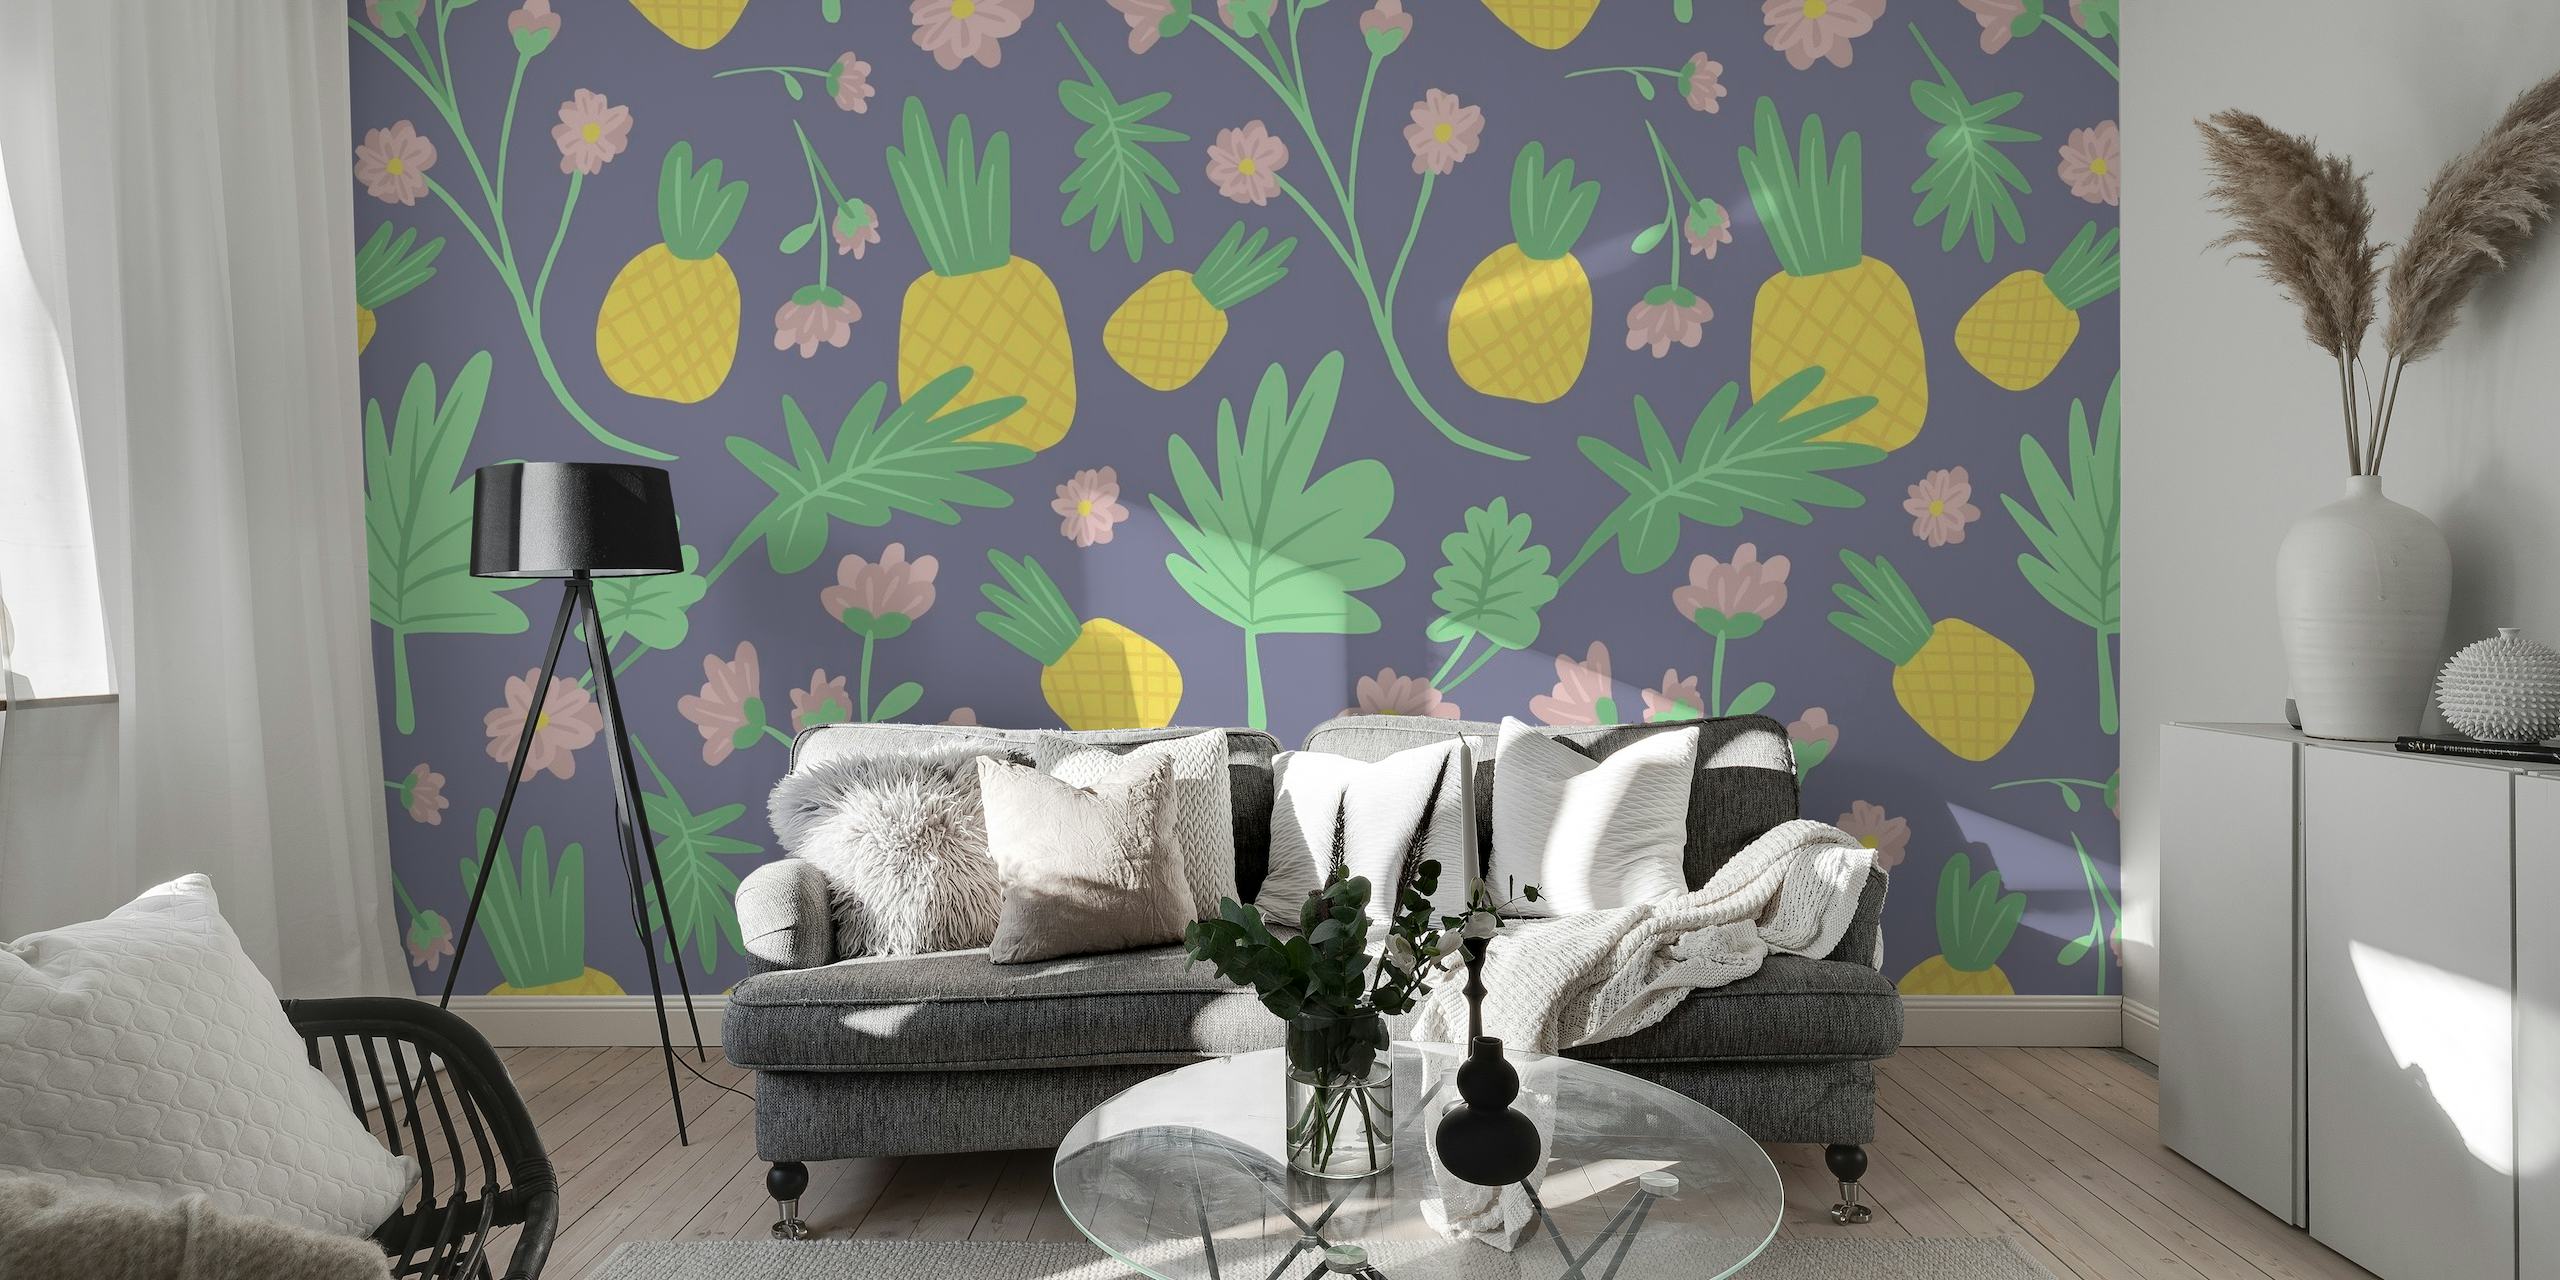 Fototapete Tropical Pineapple mit Ananasmotiven und Blumenmustern auf violettem Hintergrund